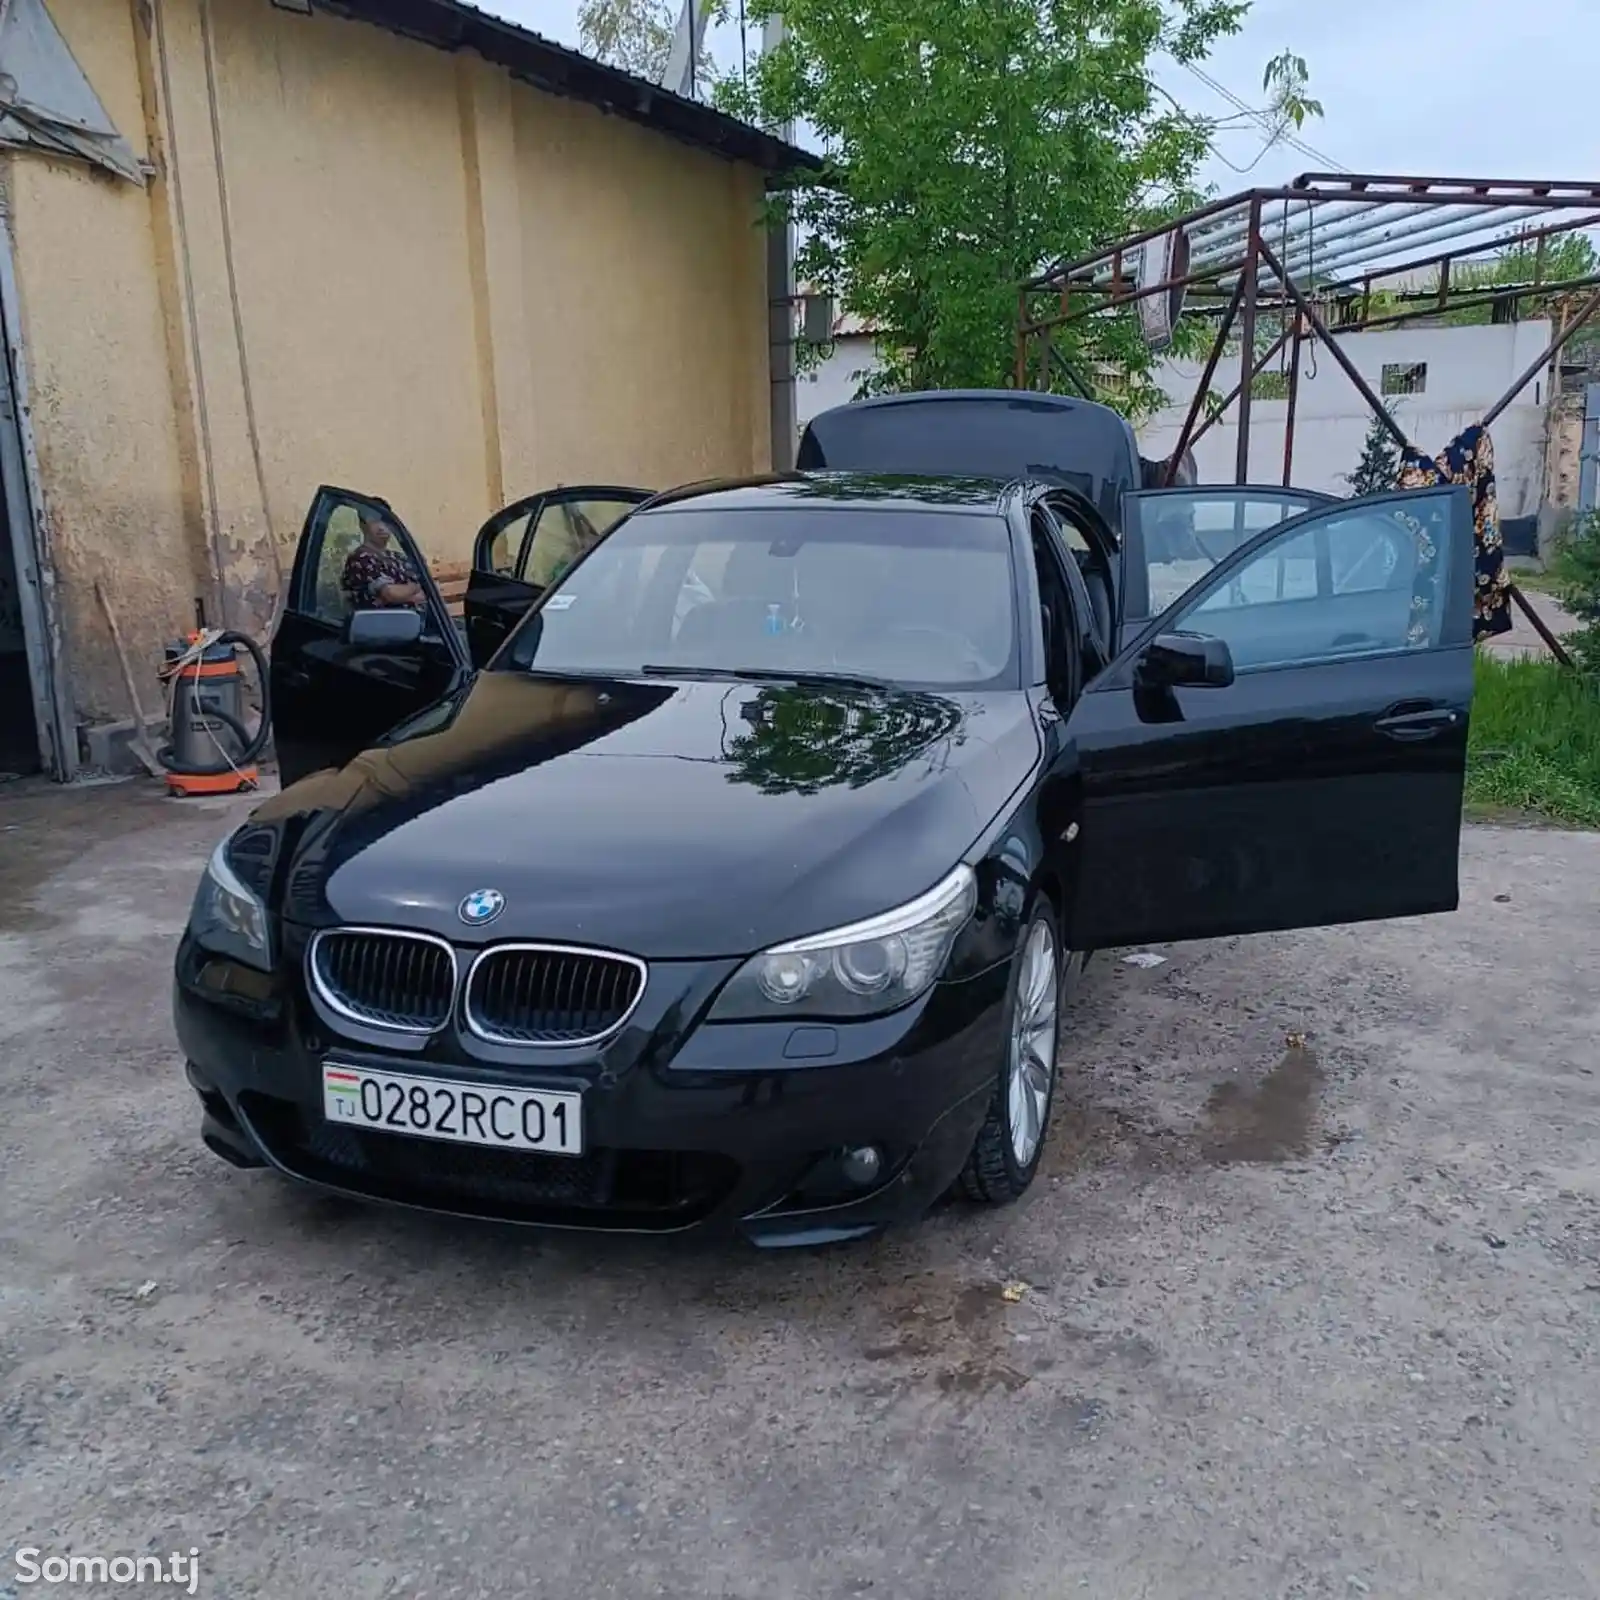 BMW M5, 2004-2